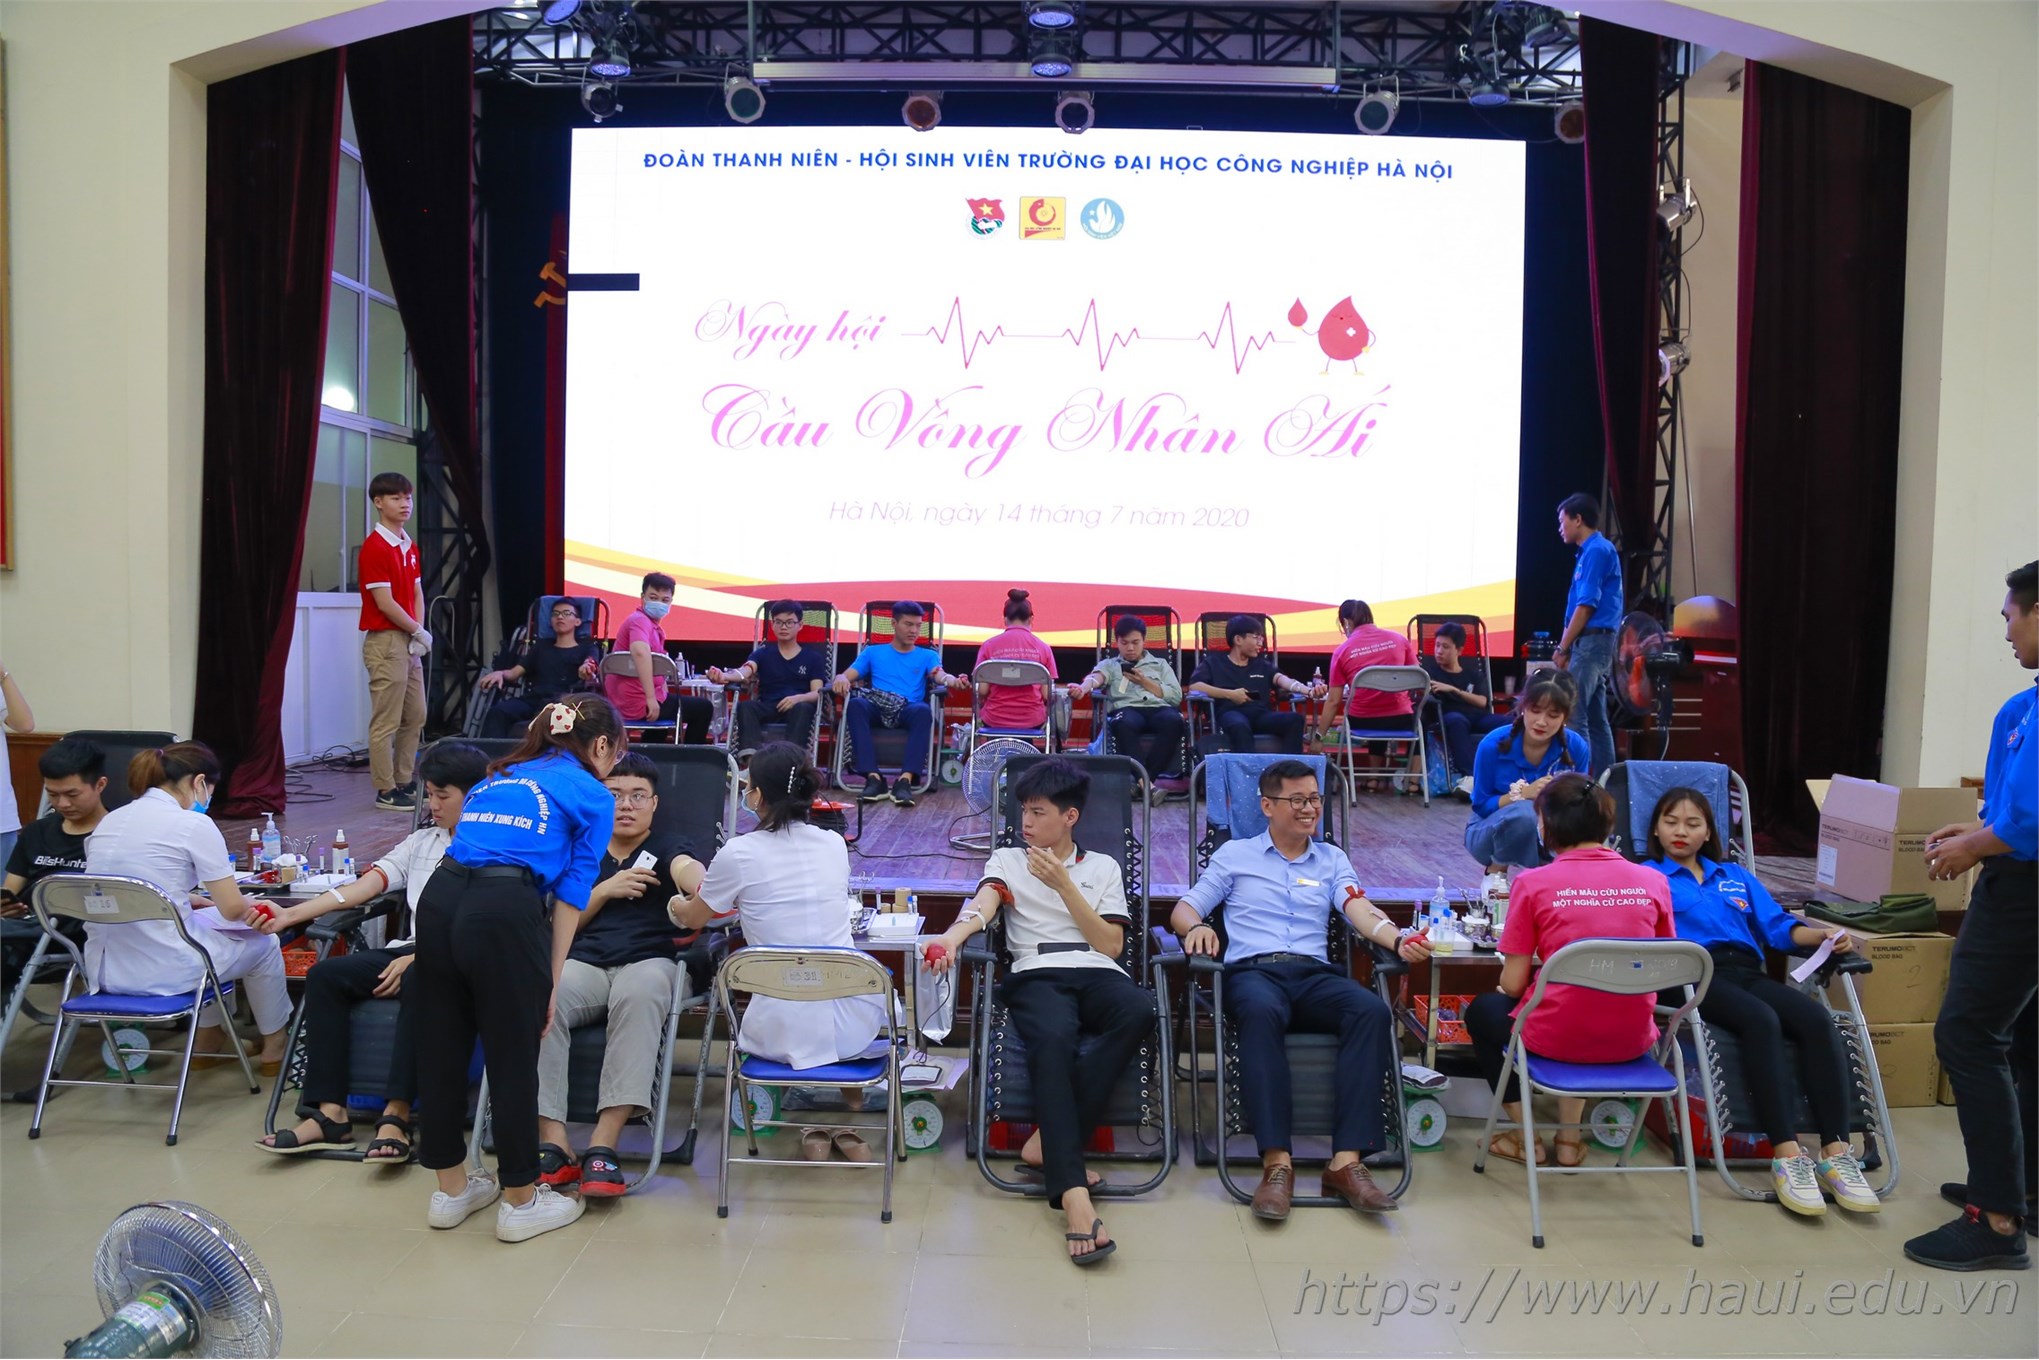 Ngày hội hiến máu năm 2020 tại Đại học Công nghiệp Hà Nội